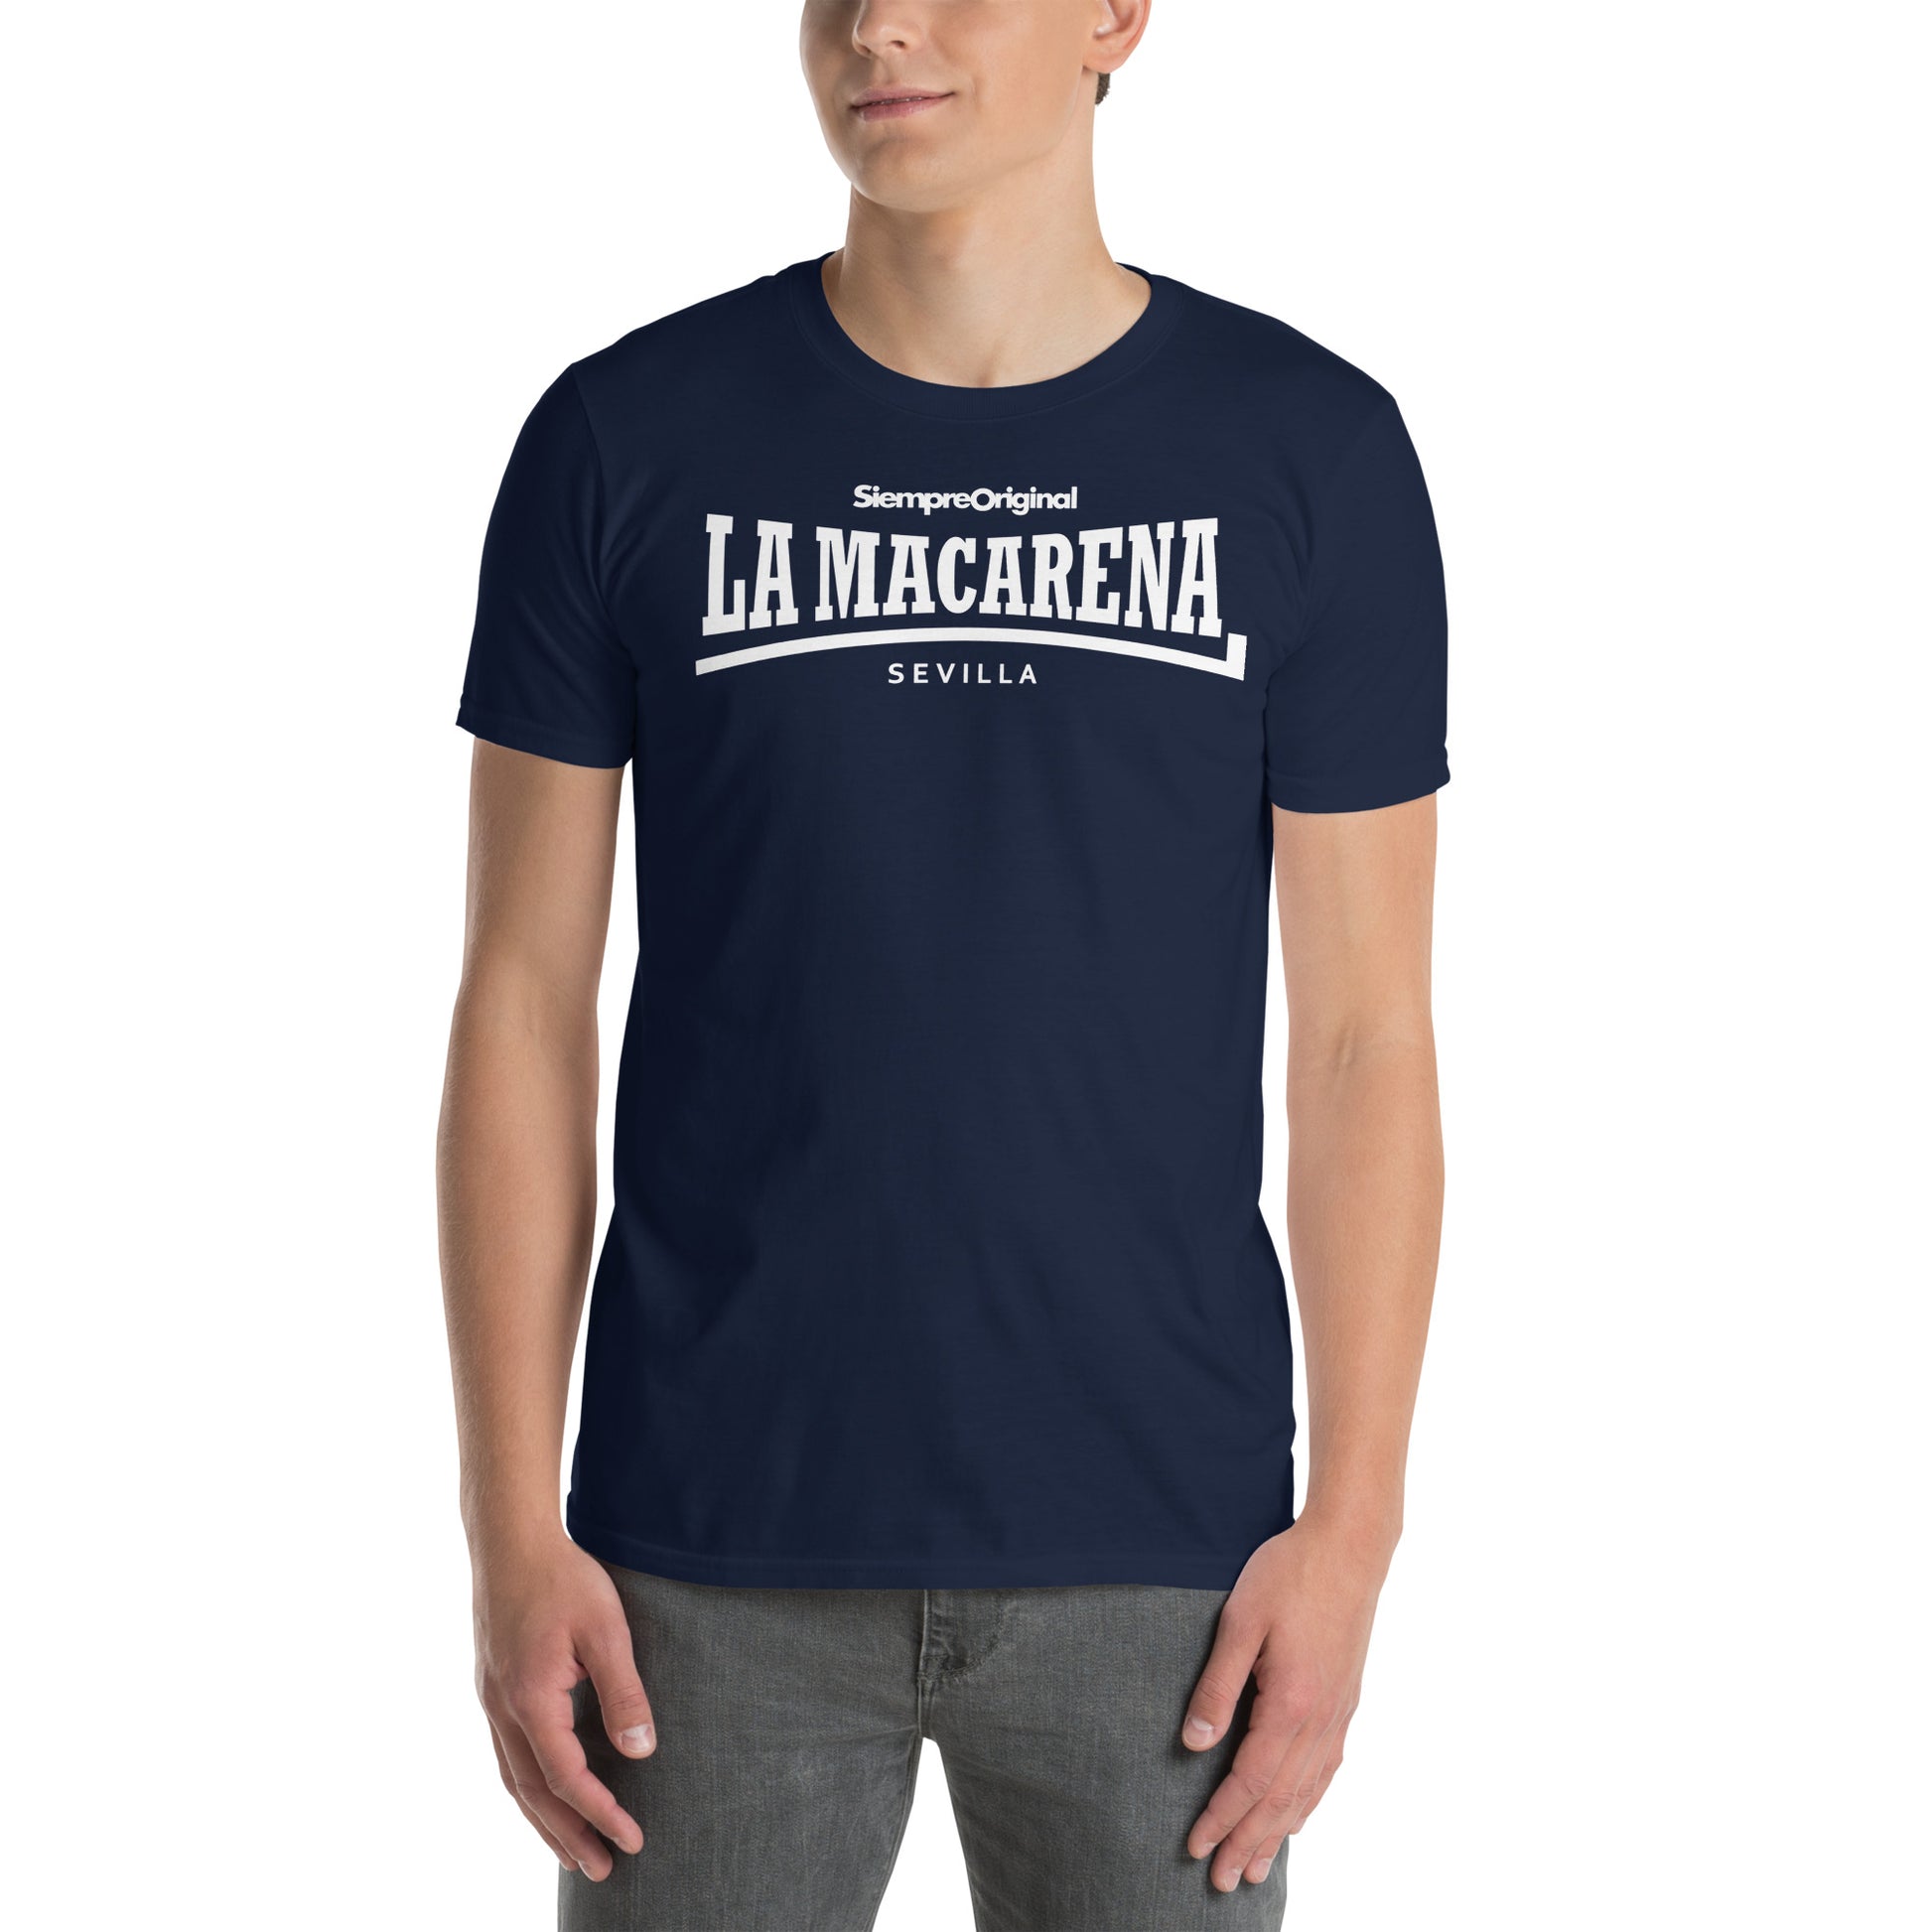 Camiseta del barrio de La Macarena - Sevilla. Color Azul Marino.